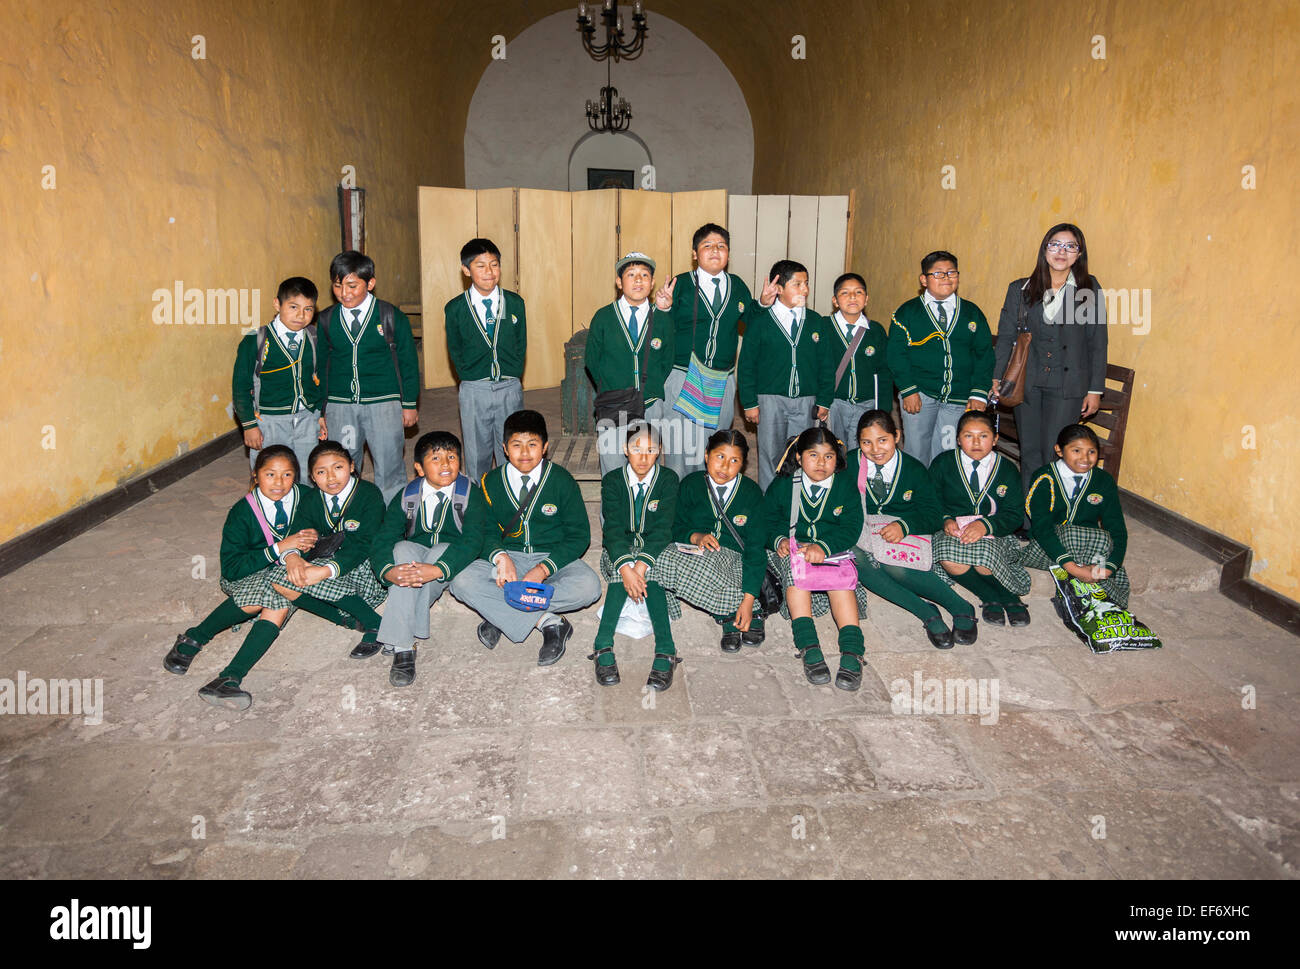 Classe d'écoliers péruviens locaux dans l'uniforme scolaire posant pour une photo de groupe classe bénéficiant de visiter Couvent Santa Catalina, Arequipa, Pérou Banque D'Images